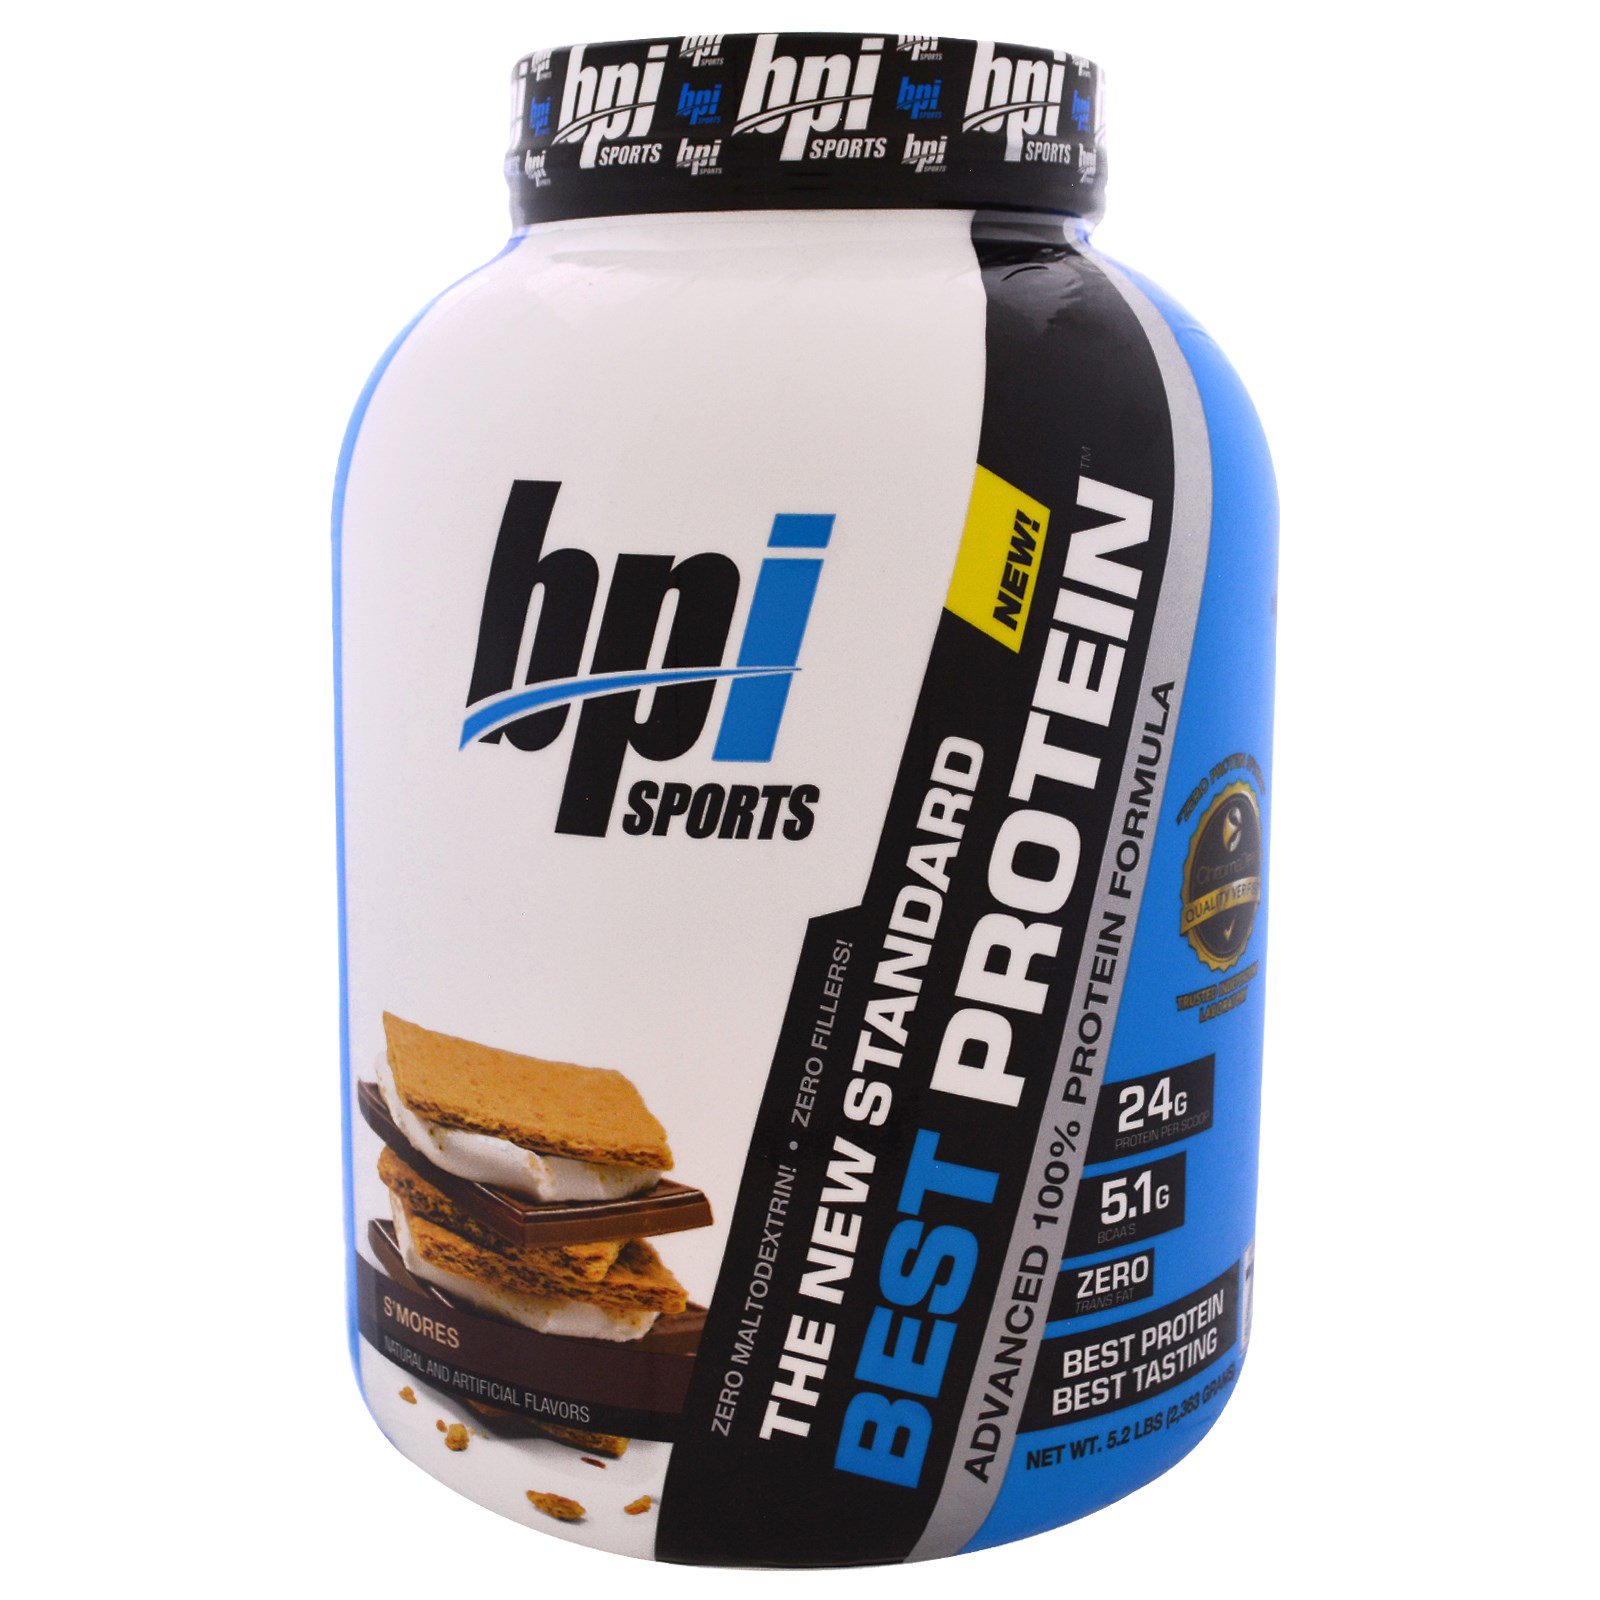 Протеин в косметике. BPI best Protein 5lb. BPI Sports протеин. Протеин artlab High Protein Formula. Белково-протеиновая смесь.